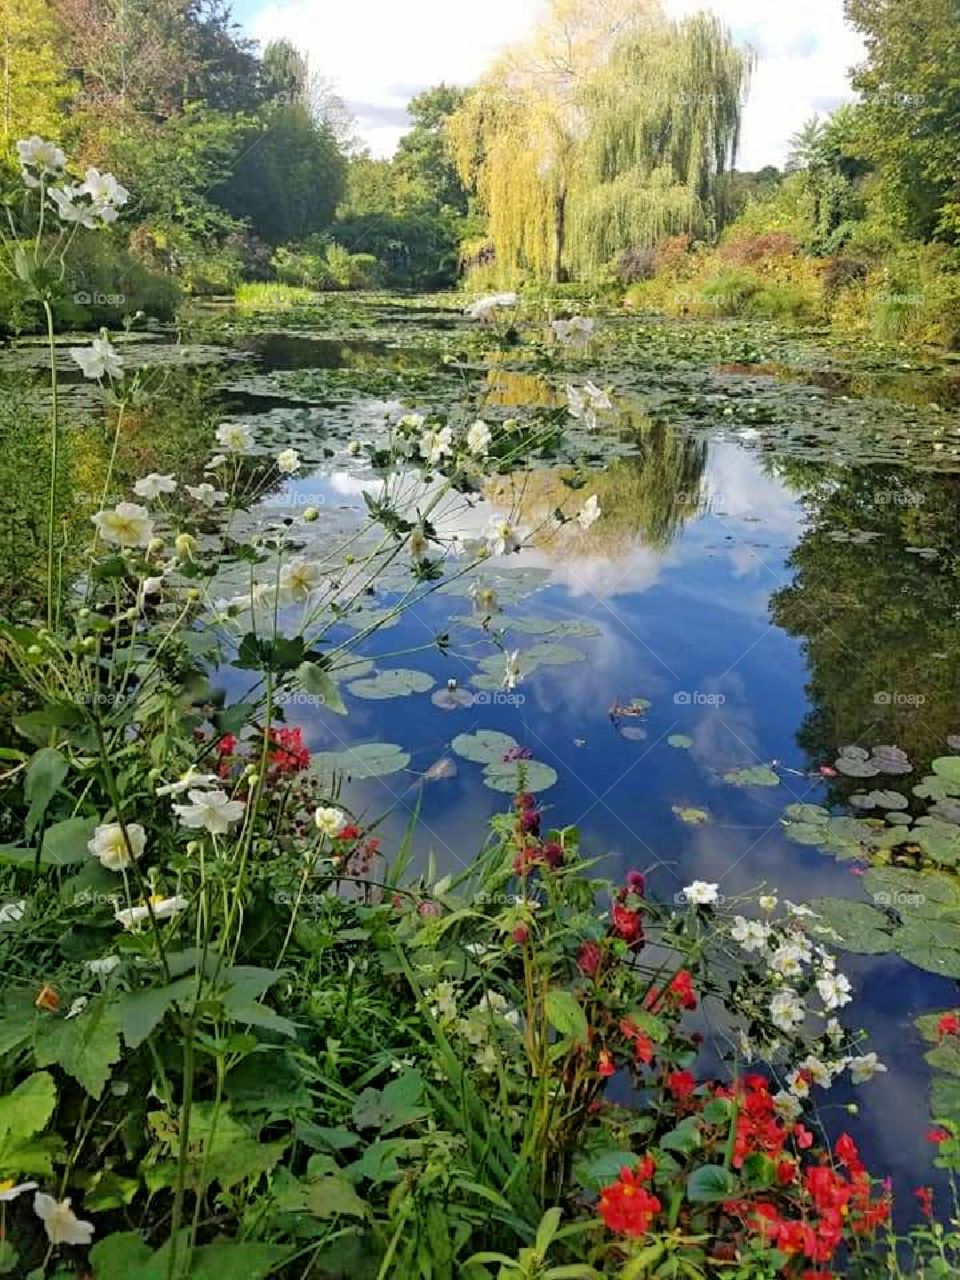 Pond, garden, peaceful